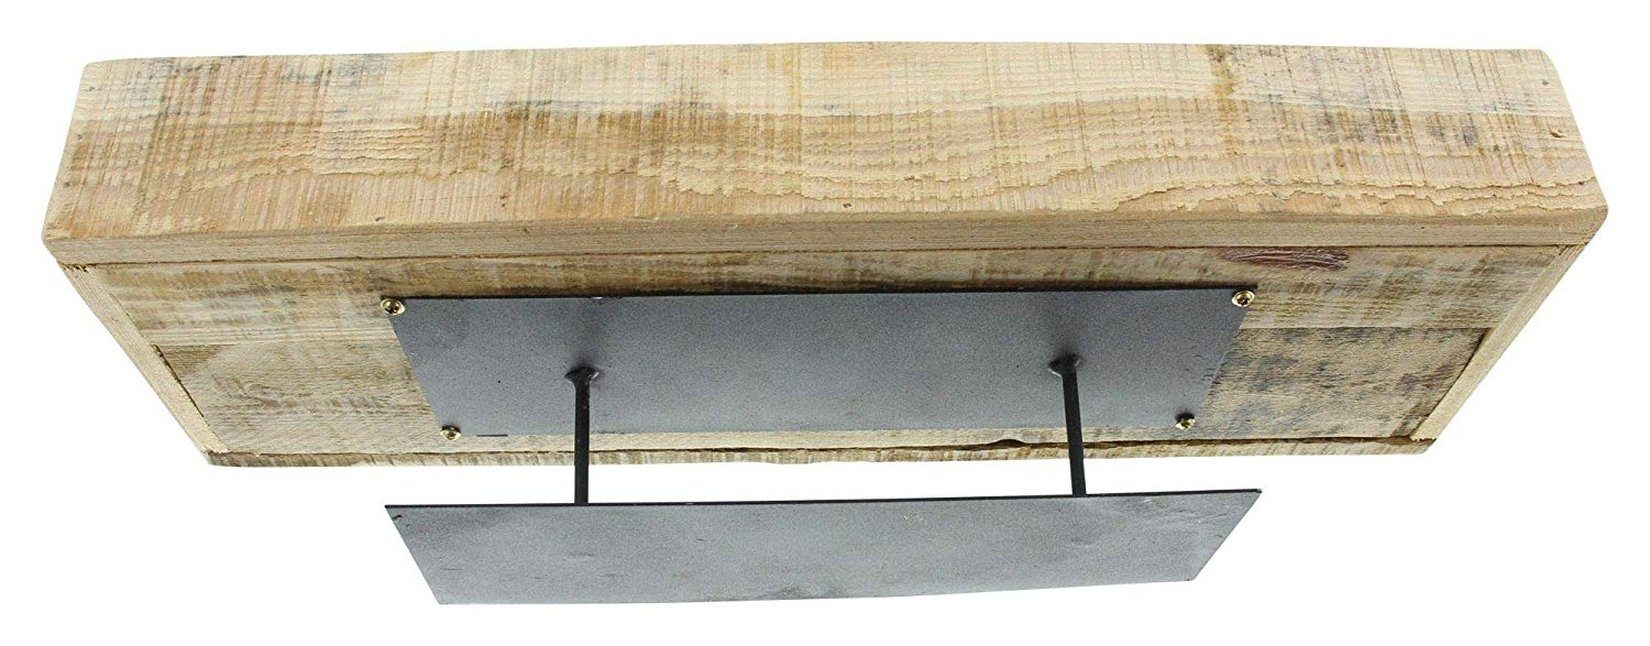 aus Kerzentablett, Metall Holz, Kerzenboard, mit Dekoboard, lackiertem recyceltem Fuß Dekoleidenschaft "Rustikal", aus Dekoschale mattschwarz